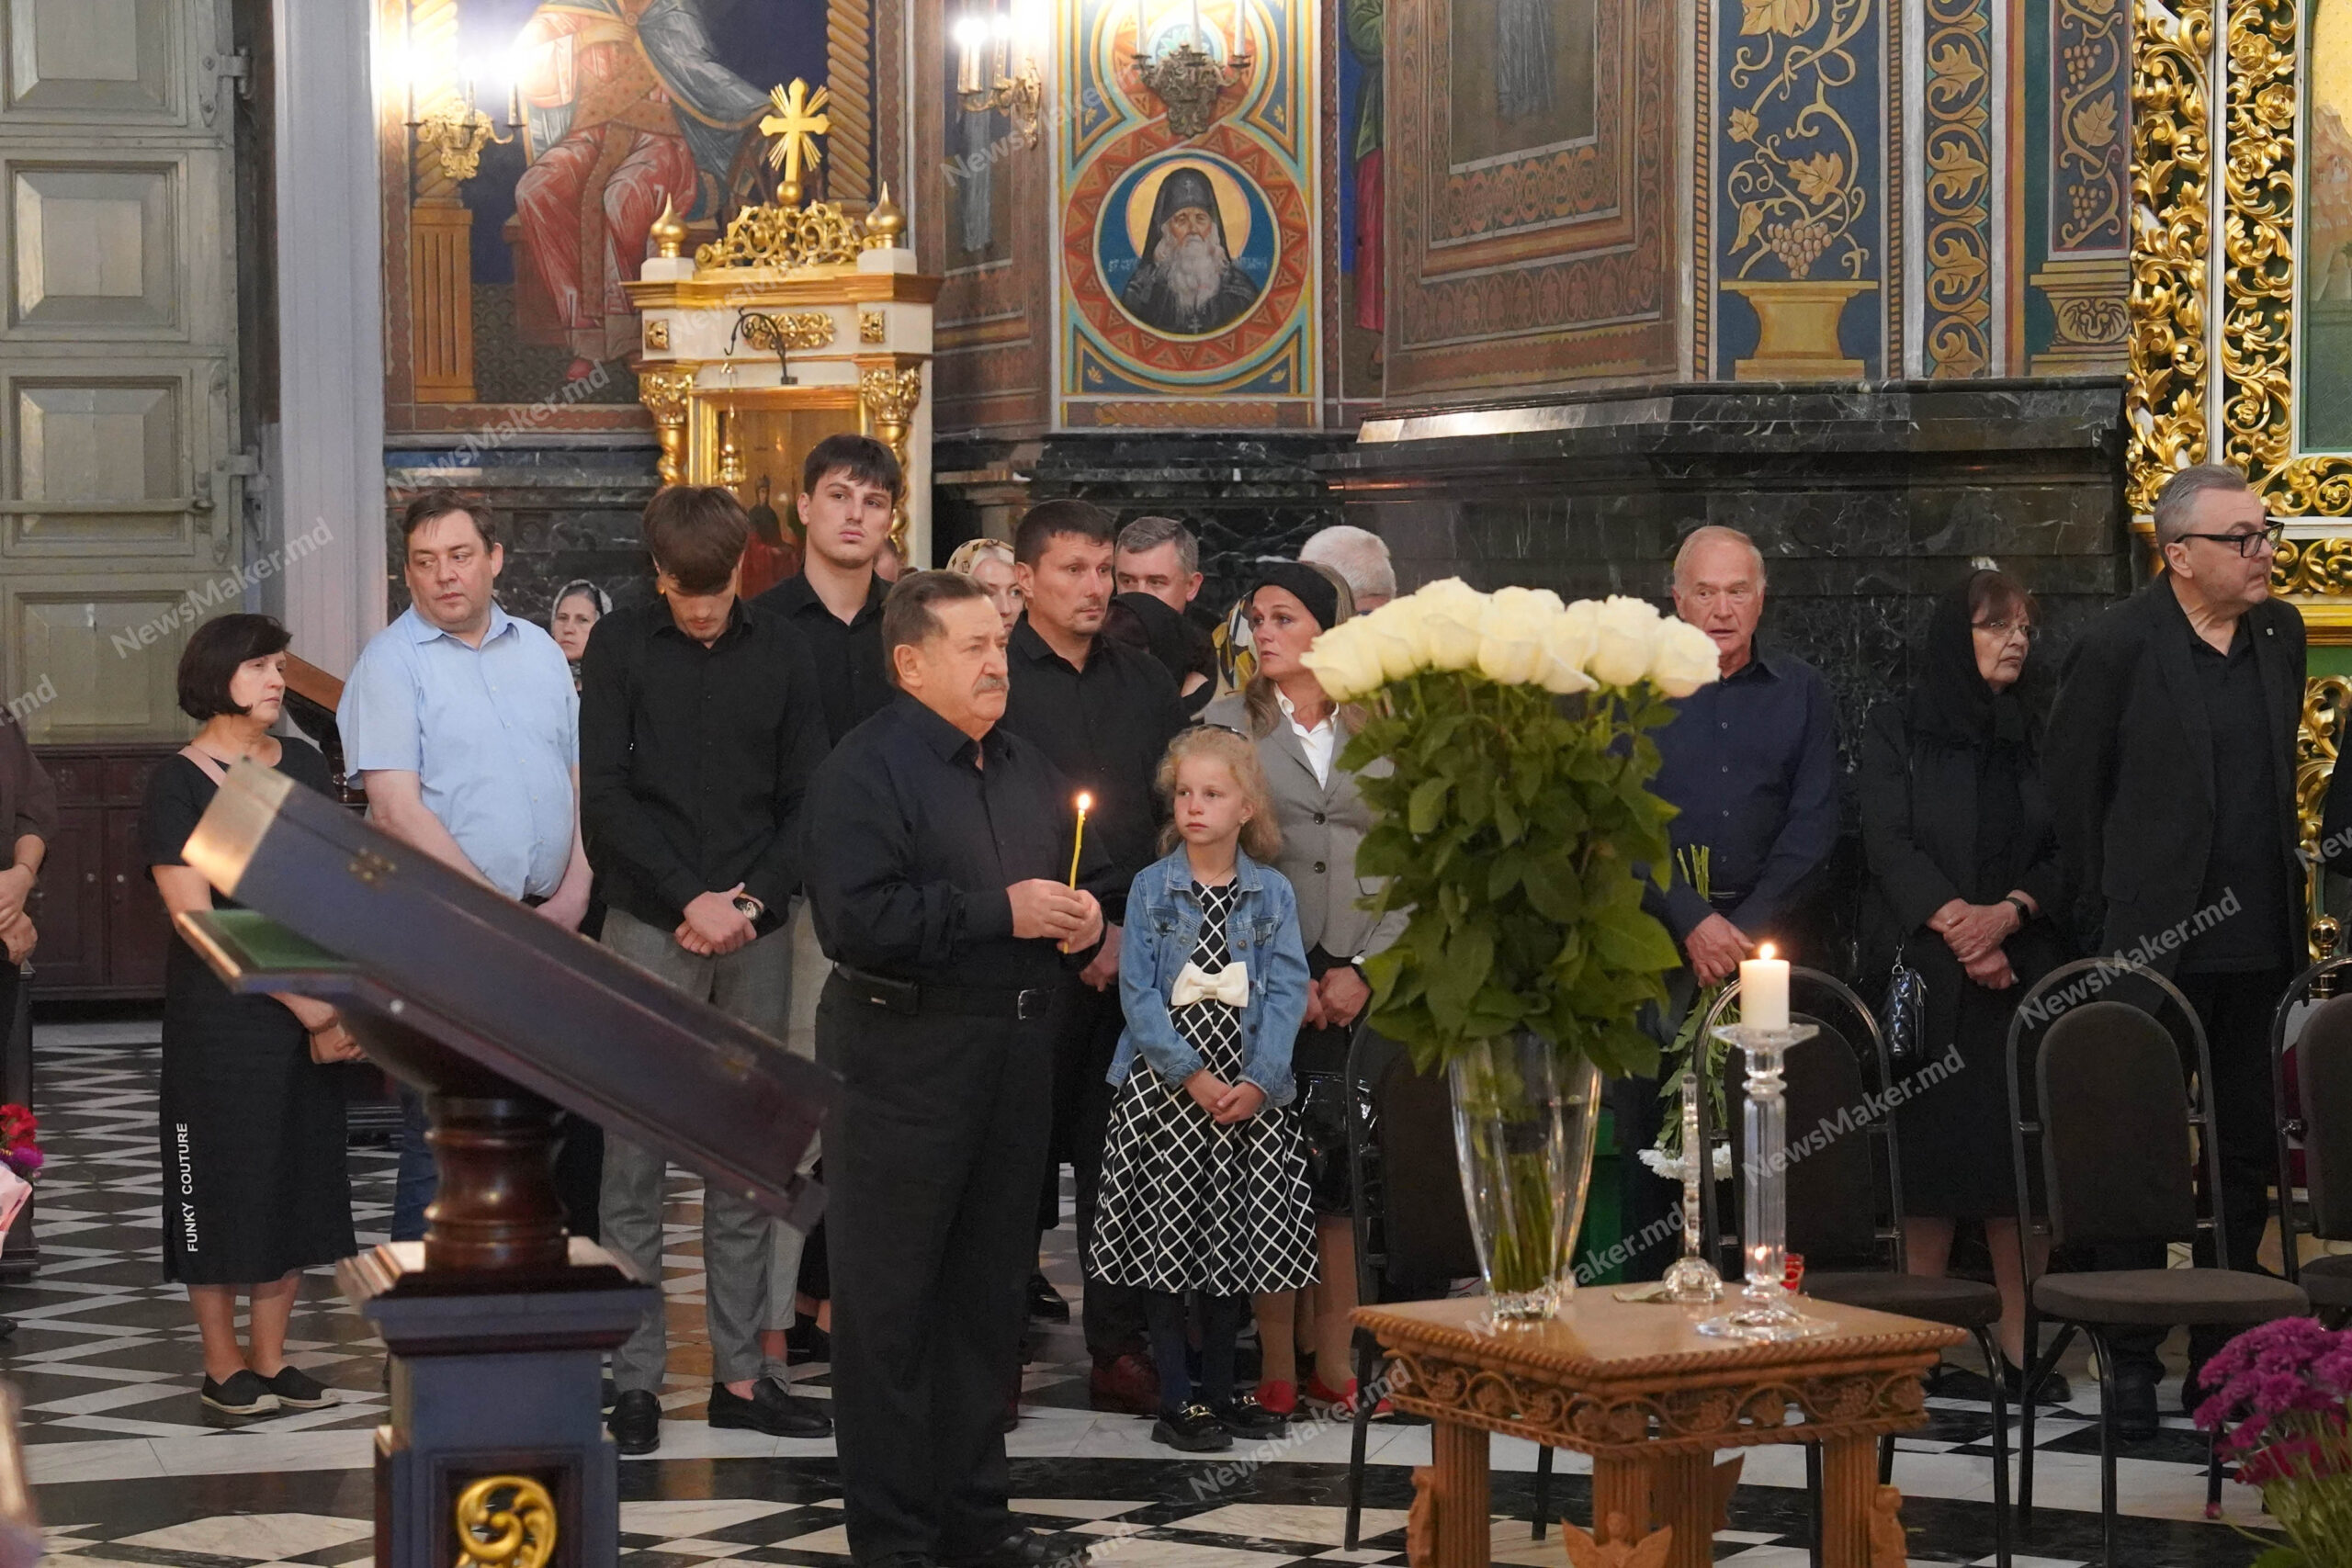 Zeci de oameni au venit la Catedrala „Nașterea Domnului” pentru a-și lua rămas bun de la Mircea Snegur. Fotoreportaj NM